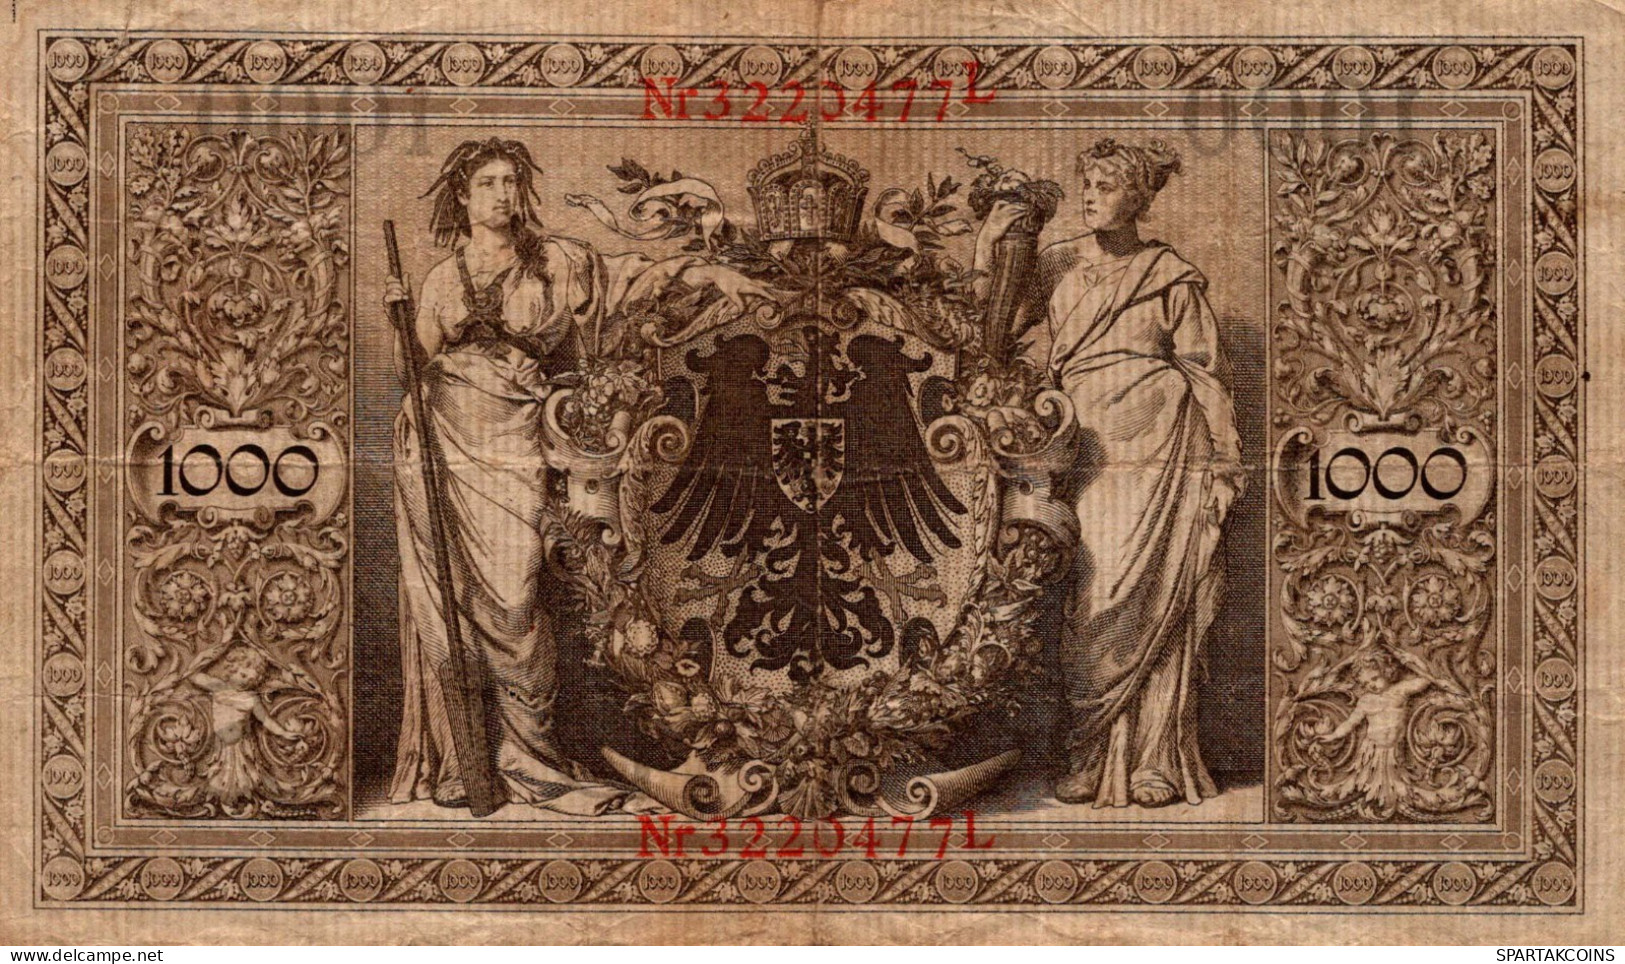 1000 MARK 1910 DEUTSCHLAND Papiergeld Banknote #PL273 - [11] Lokale Uitgaven